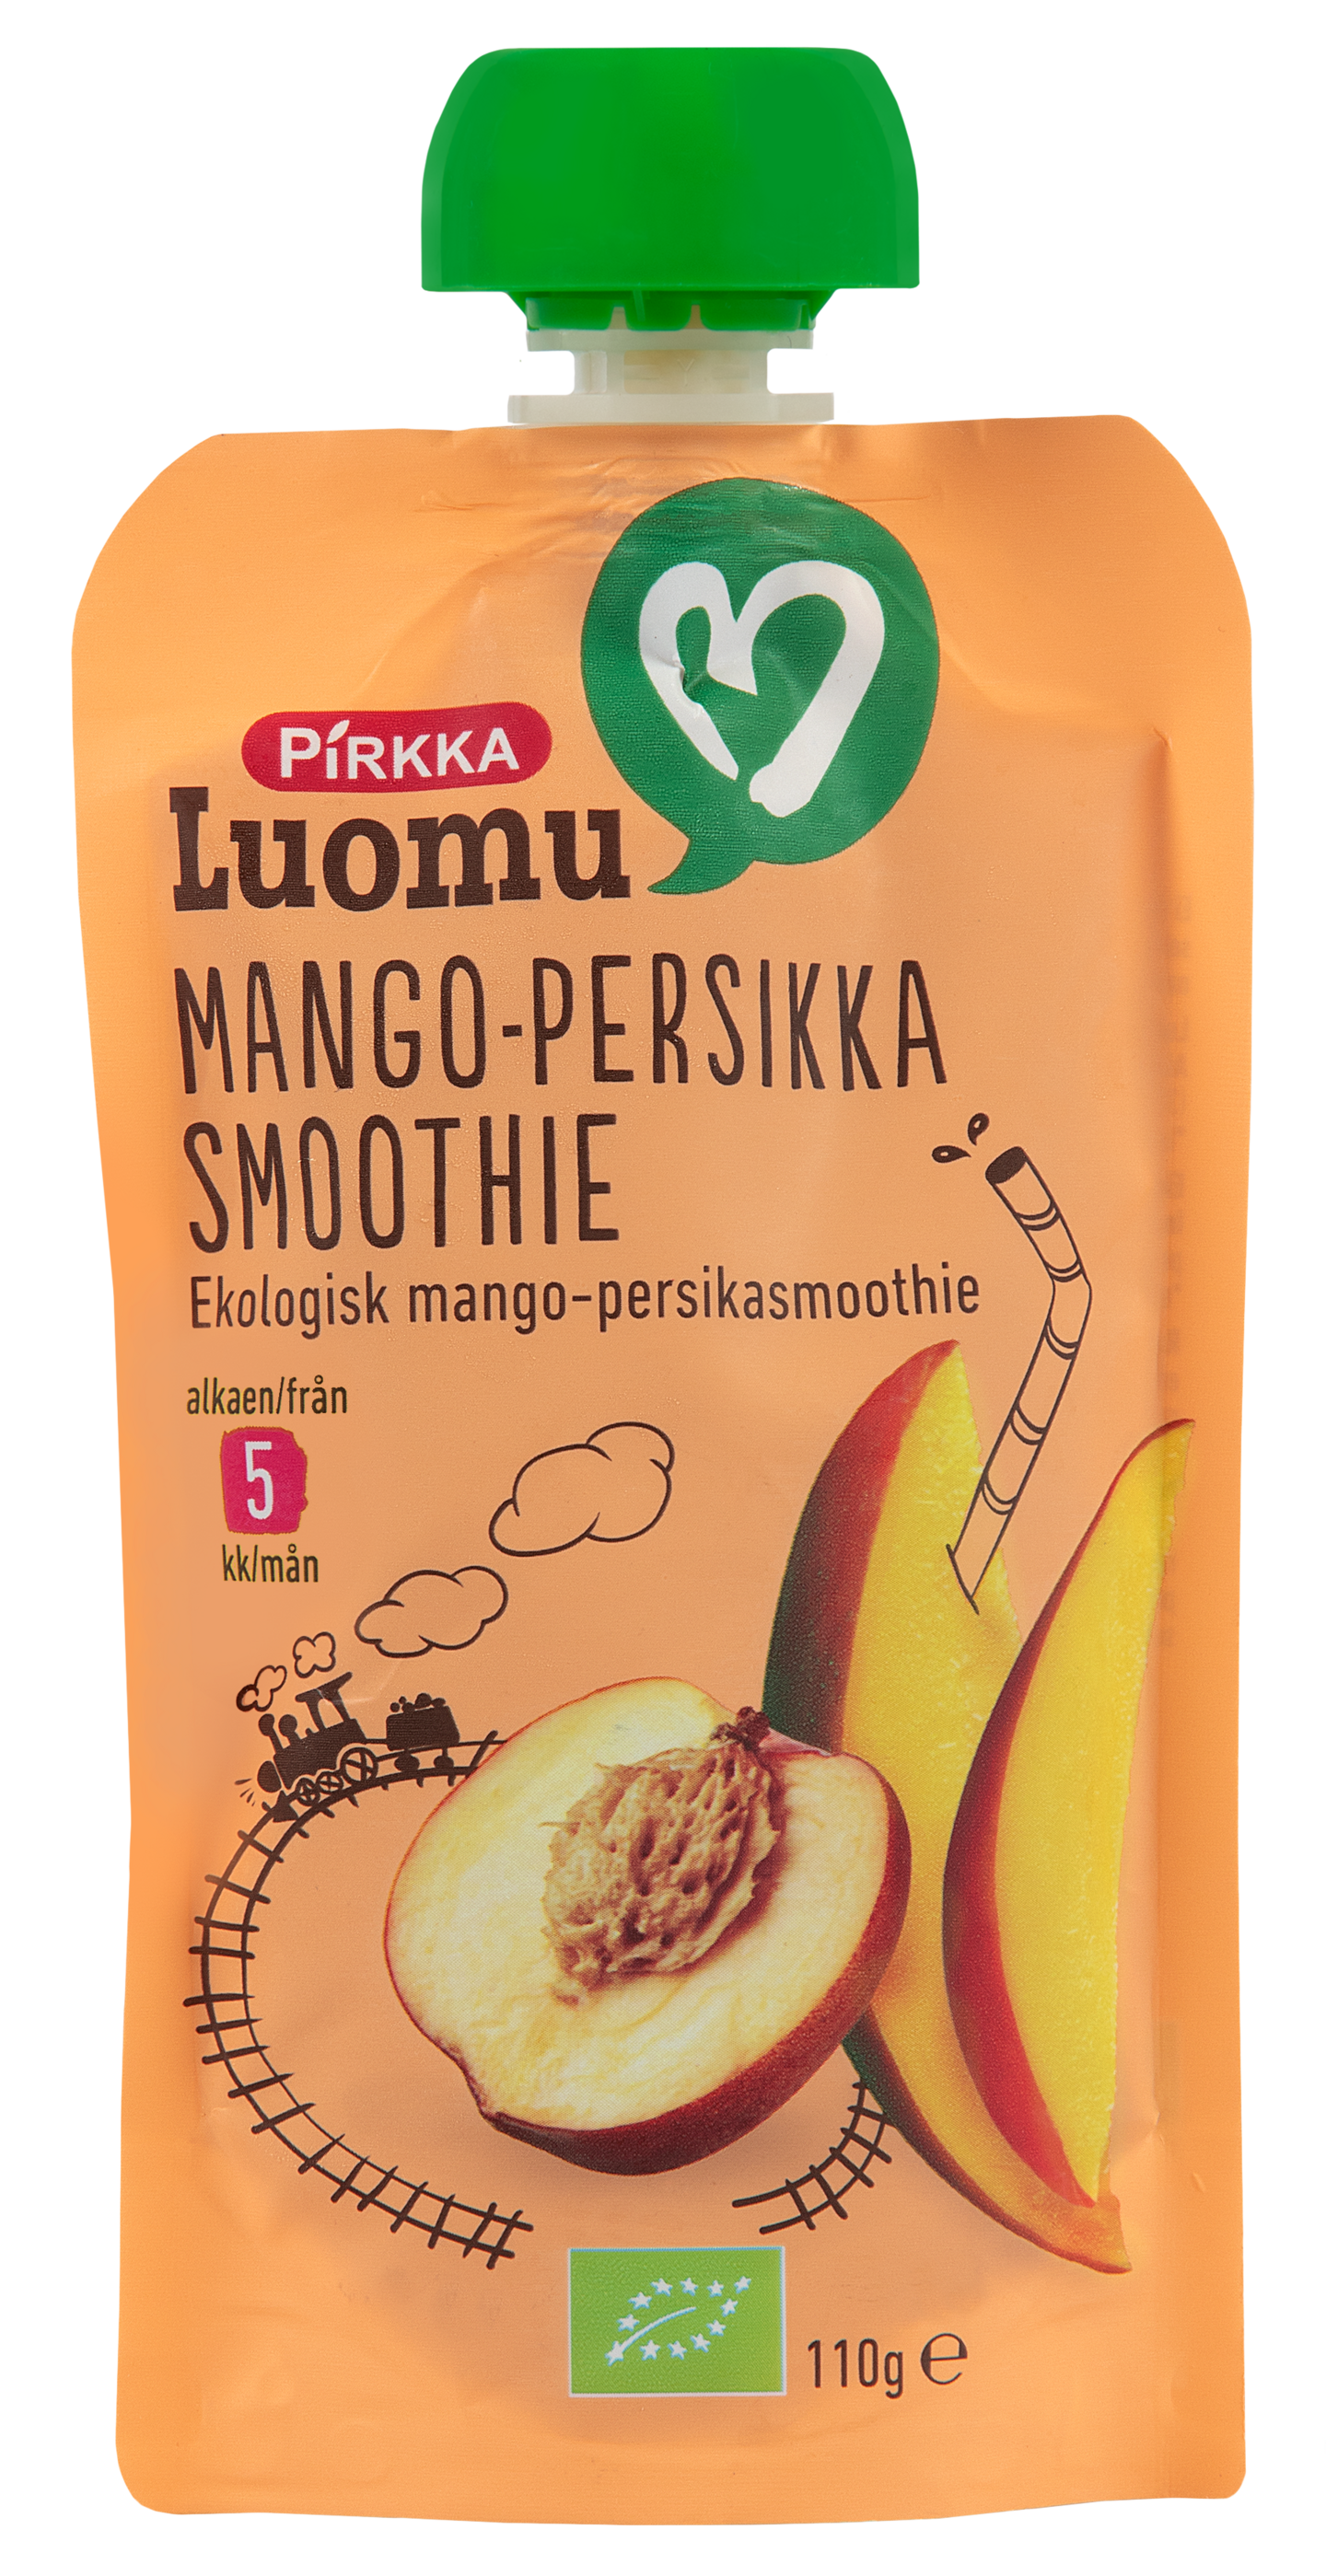 Pirkka Luomu mango-persikkasmoothie 110g 5kk | K-Ruoka Verkkokauppa